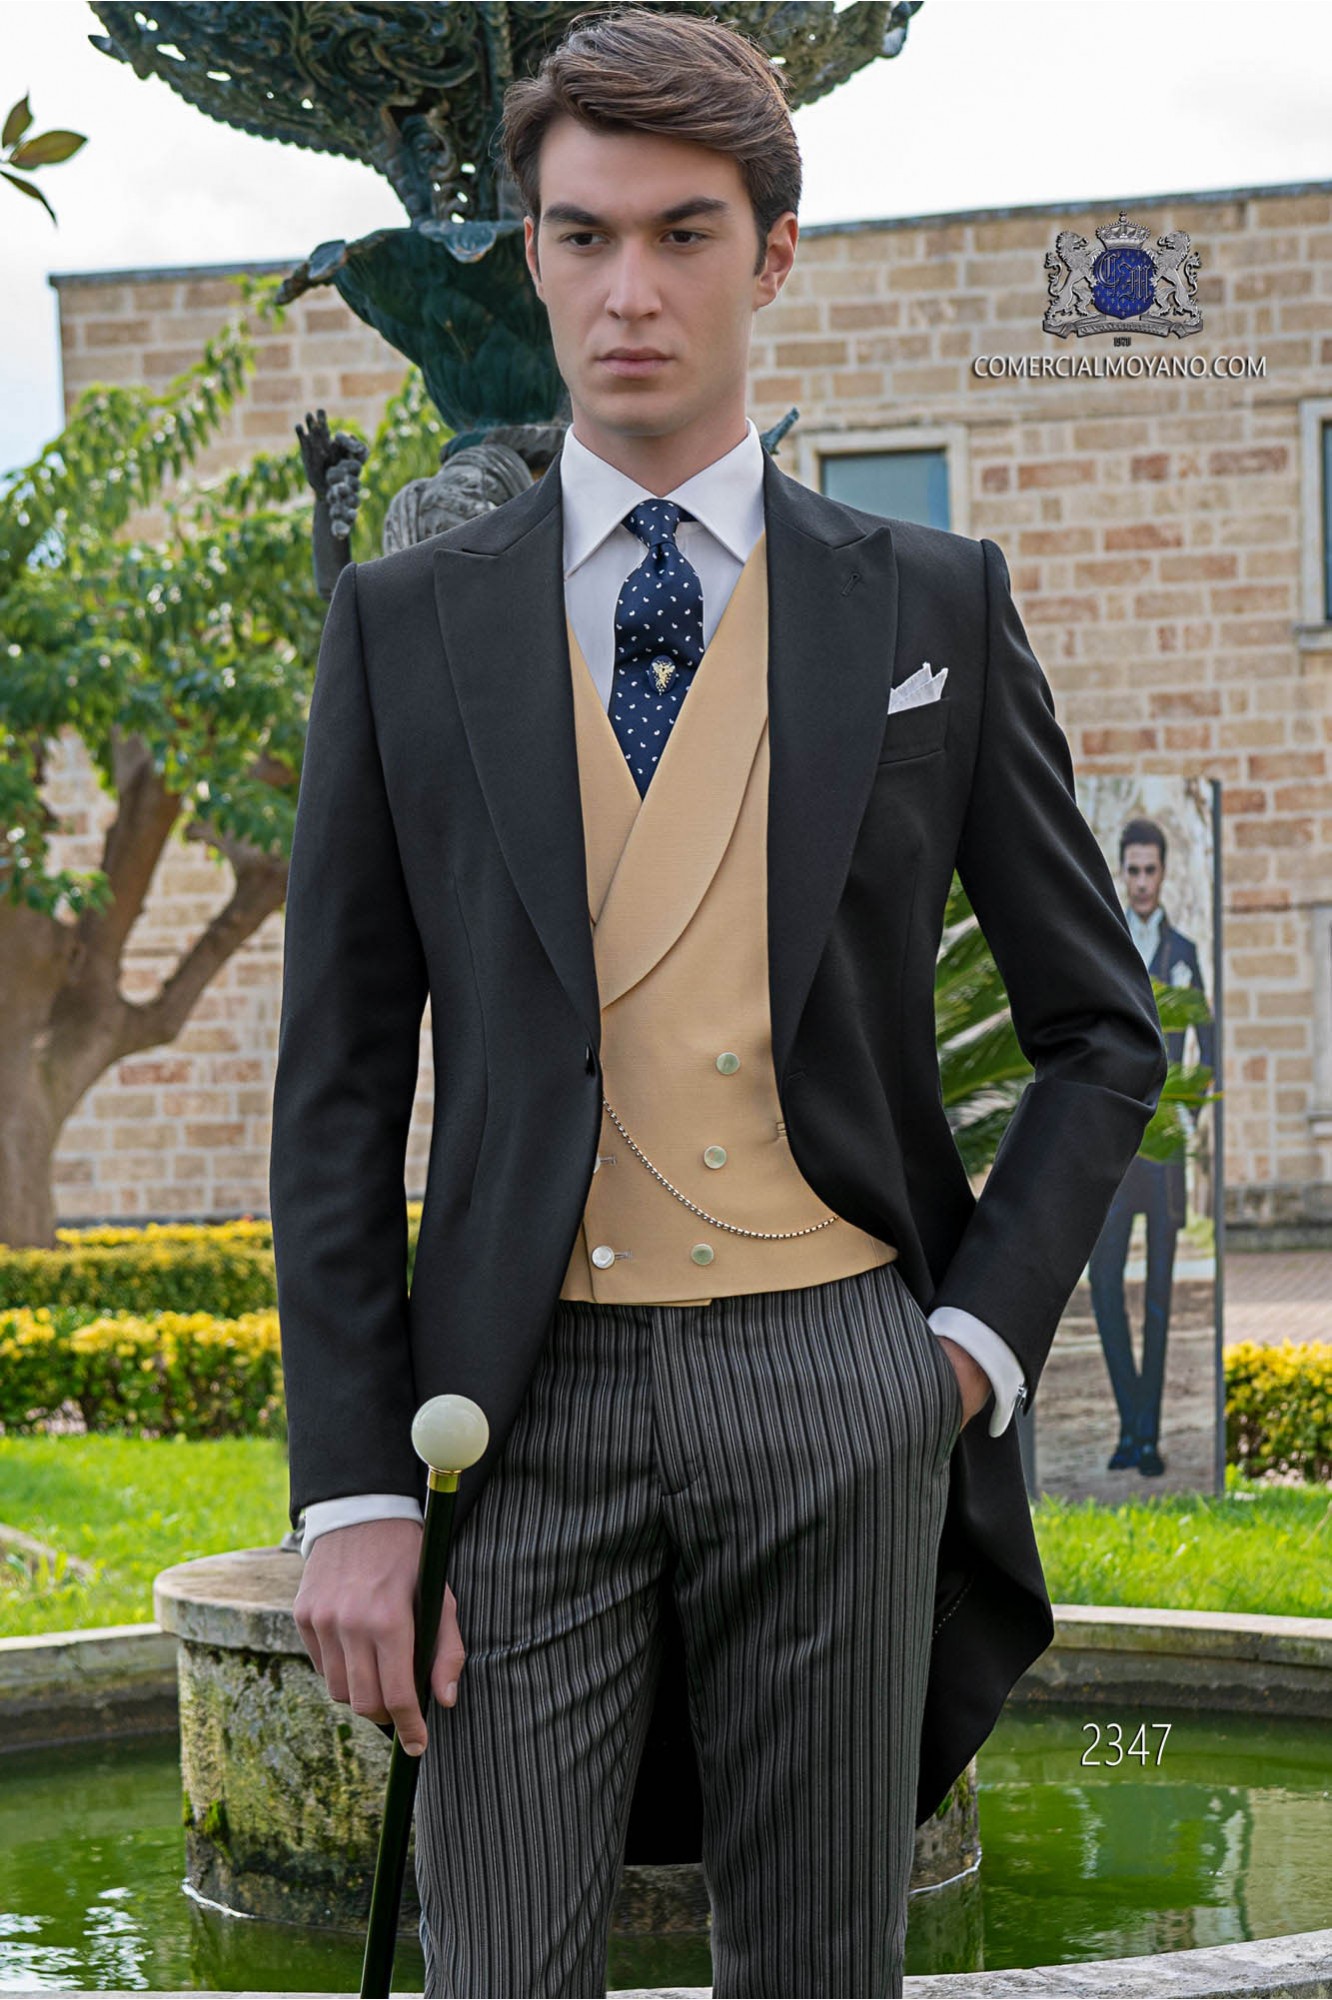 Chaqué de novio negro tejido lana con pantalón raya diplomática modelo: 2347 Mario Moyano colección Gentleman